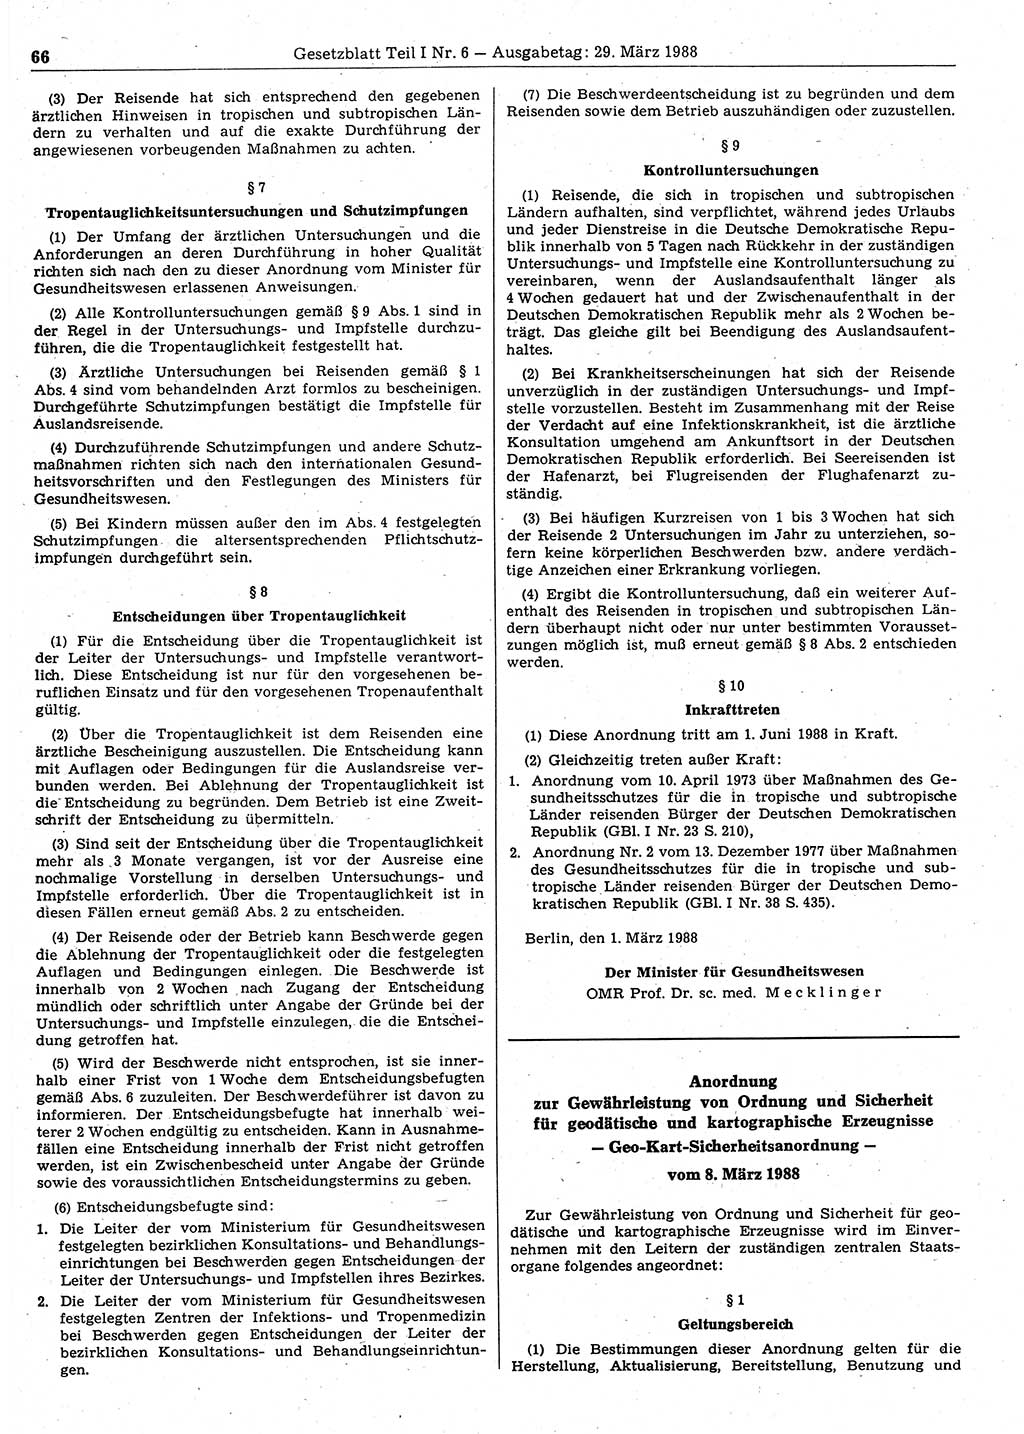 Gesetzblatt (GBl.) der Deutschen Demokratischen Republik (DDR) Teil Ⅰ 1988, Seite 66 (GBl. DDR Ⅰ 1988, S. 66)